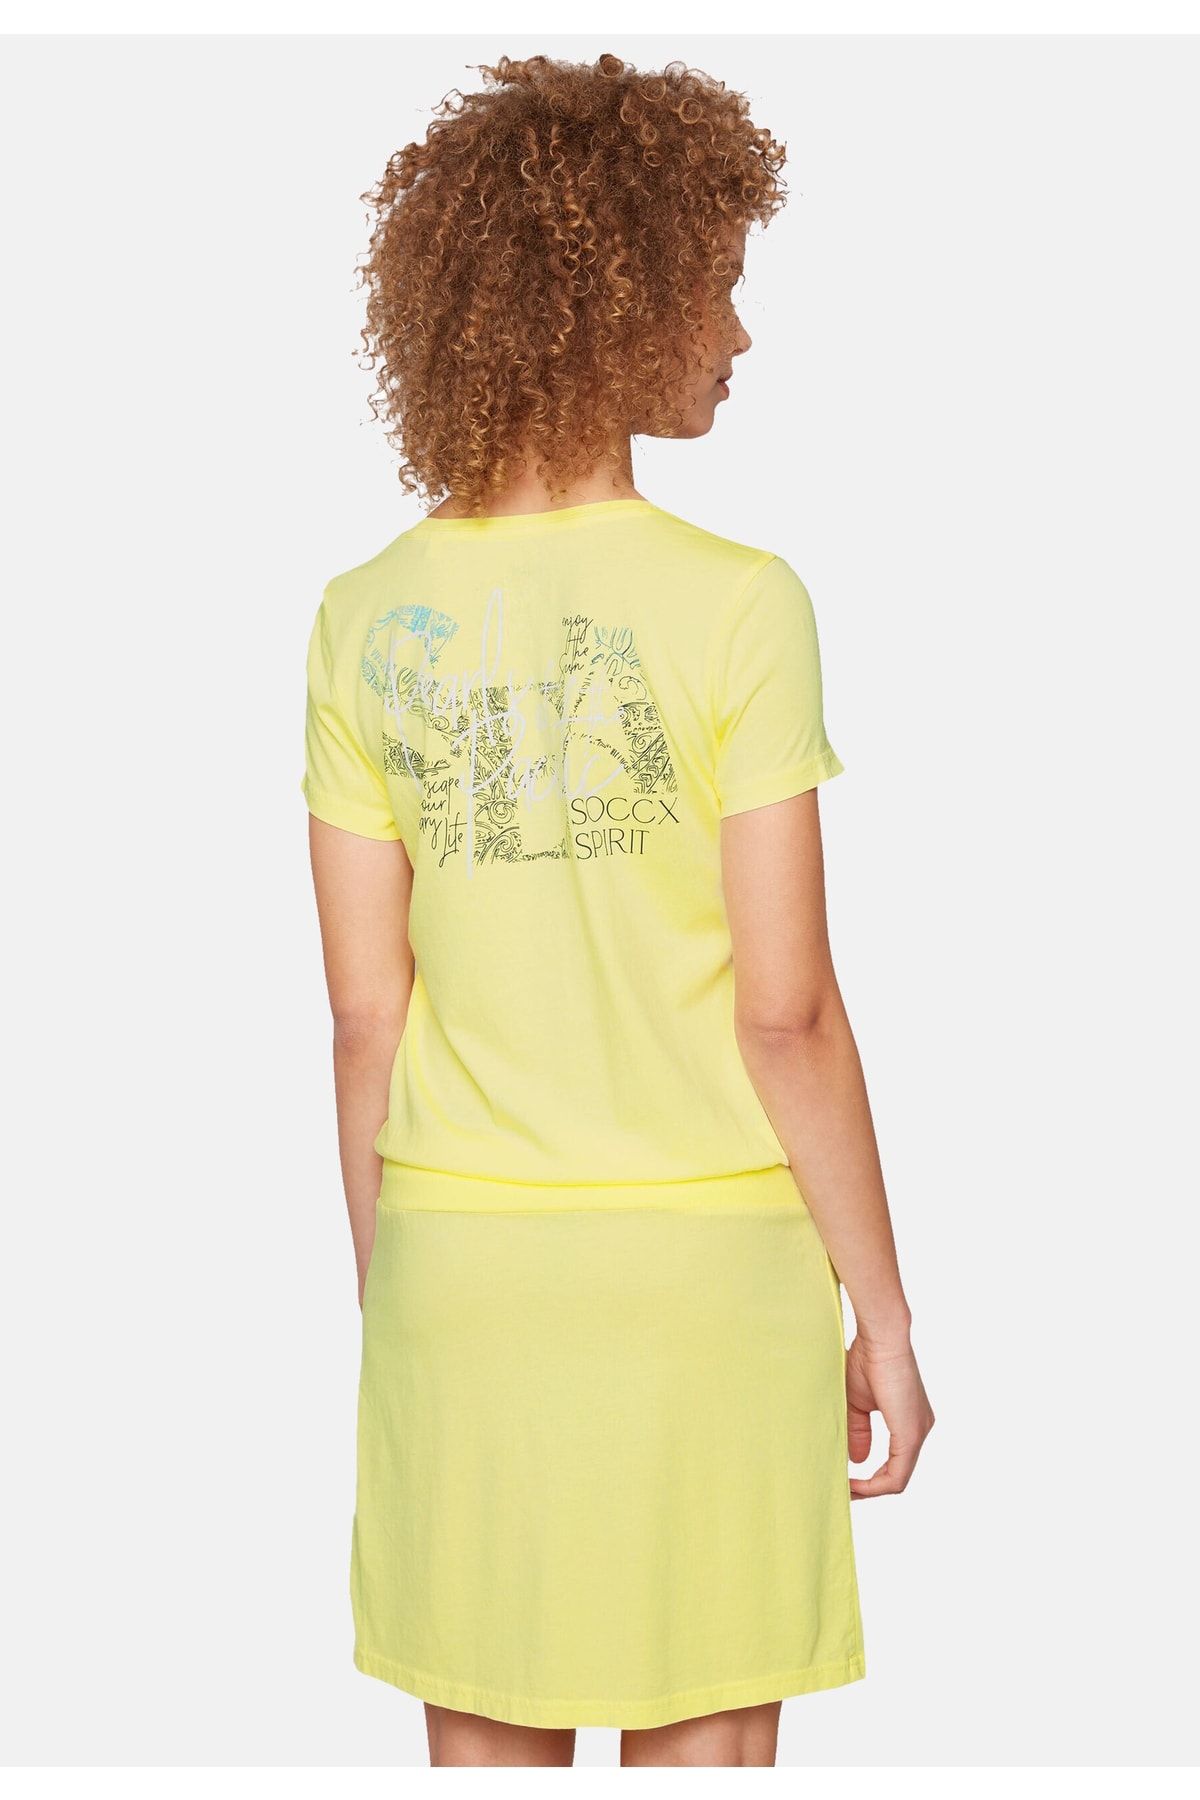 Rundhalsausschnitt T-Shirt-Kleid Print Trendyol Label kleid Taillenbund, mit und - geripptem Soccx